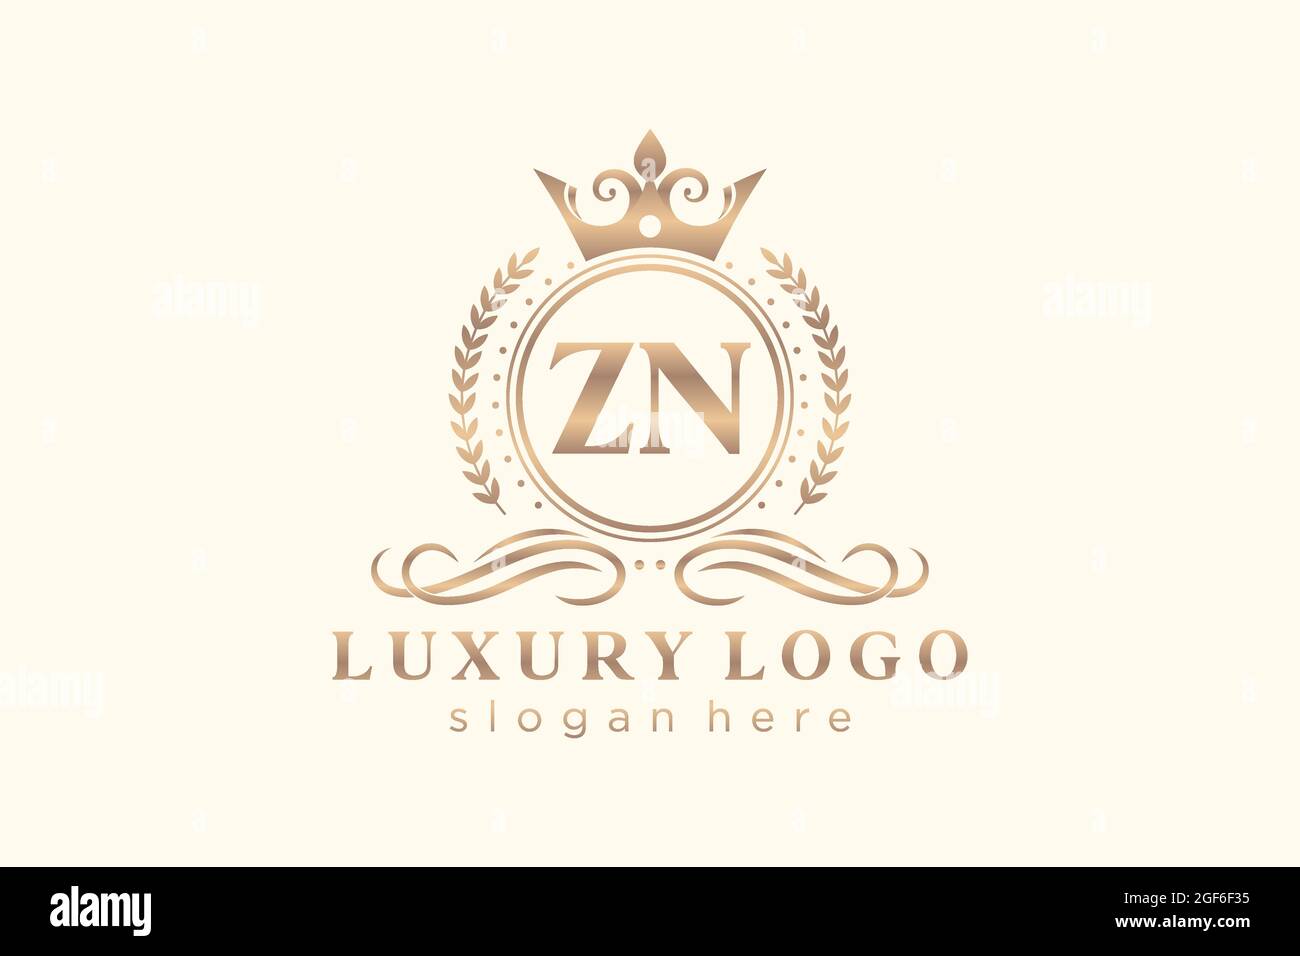 ZN Royal Luxury Logo-Vorlage in Vektorgrafik für Restaurant, Royalty, Boutique, Café, Hotel, Wappentisch, Schmuck, Mode und andere Vektorgrafik. Stock Vektor